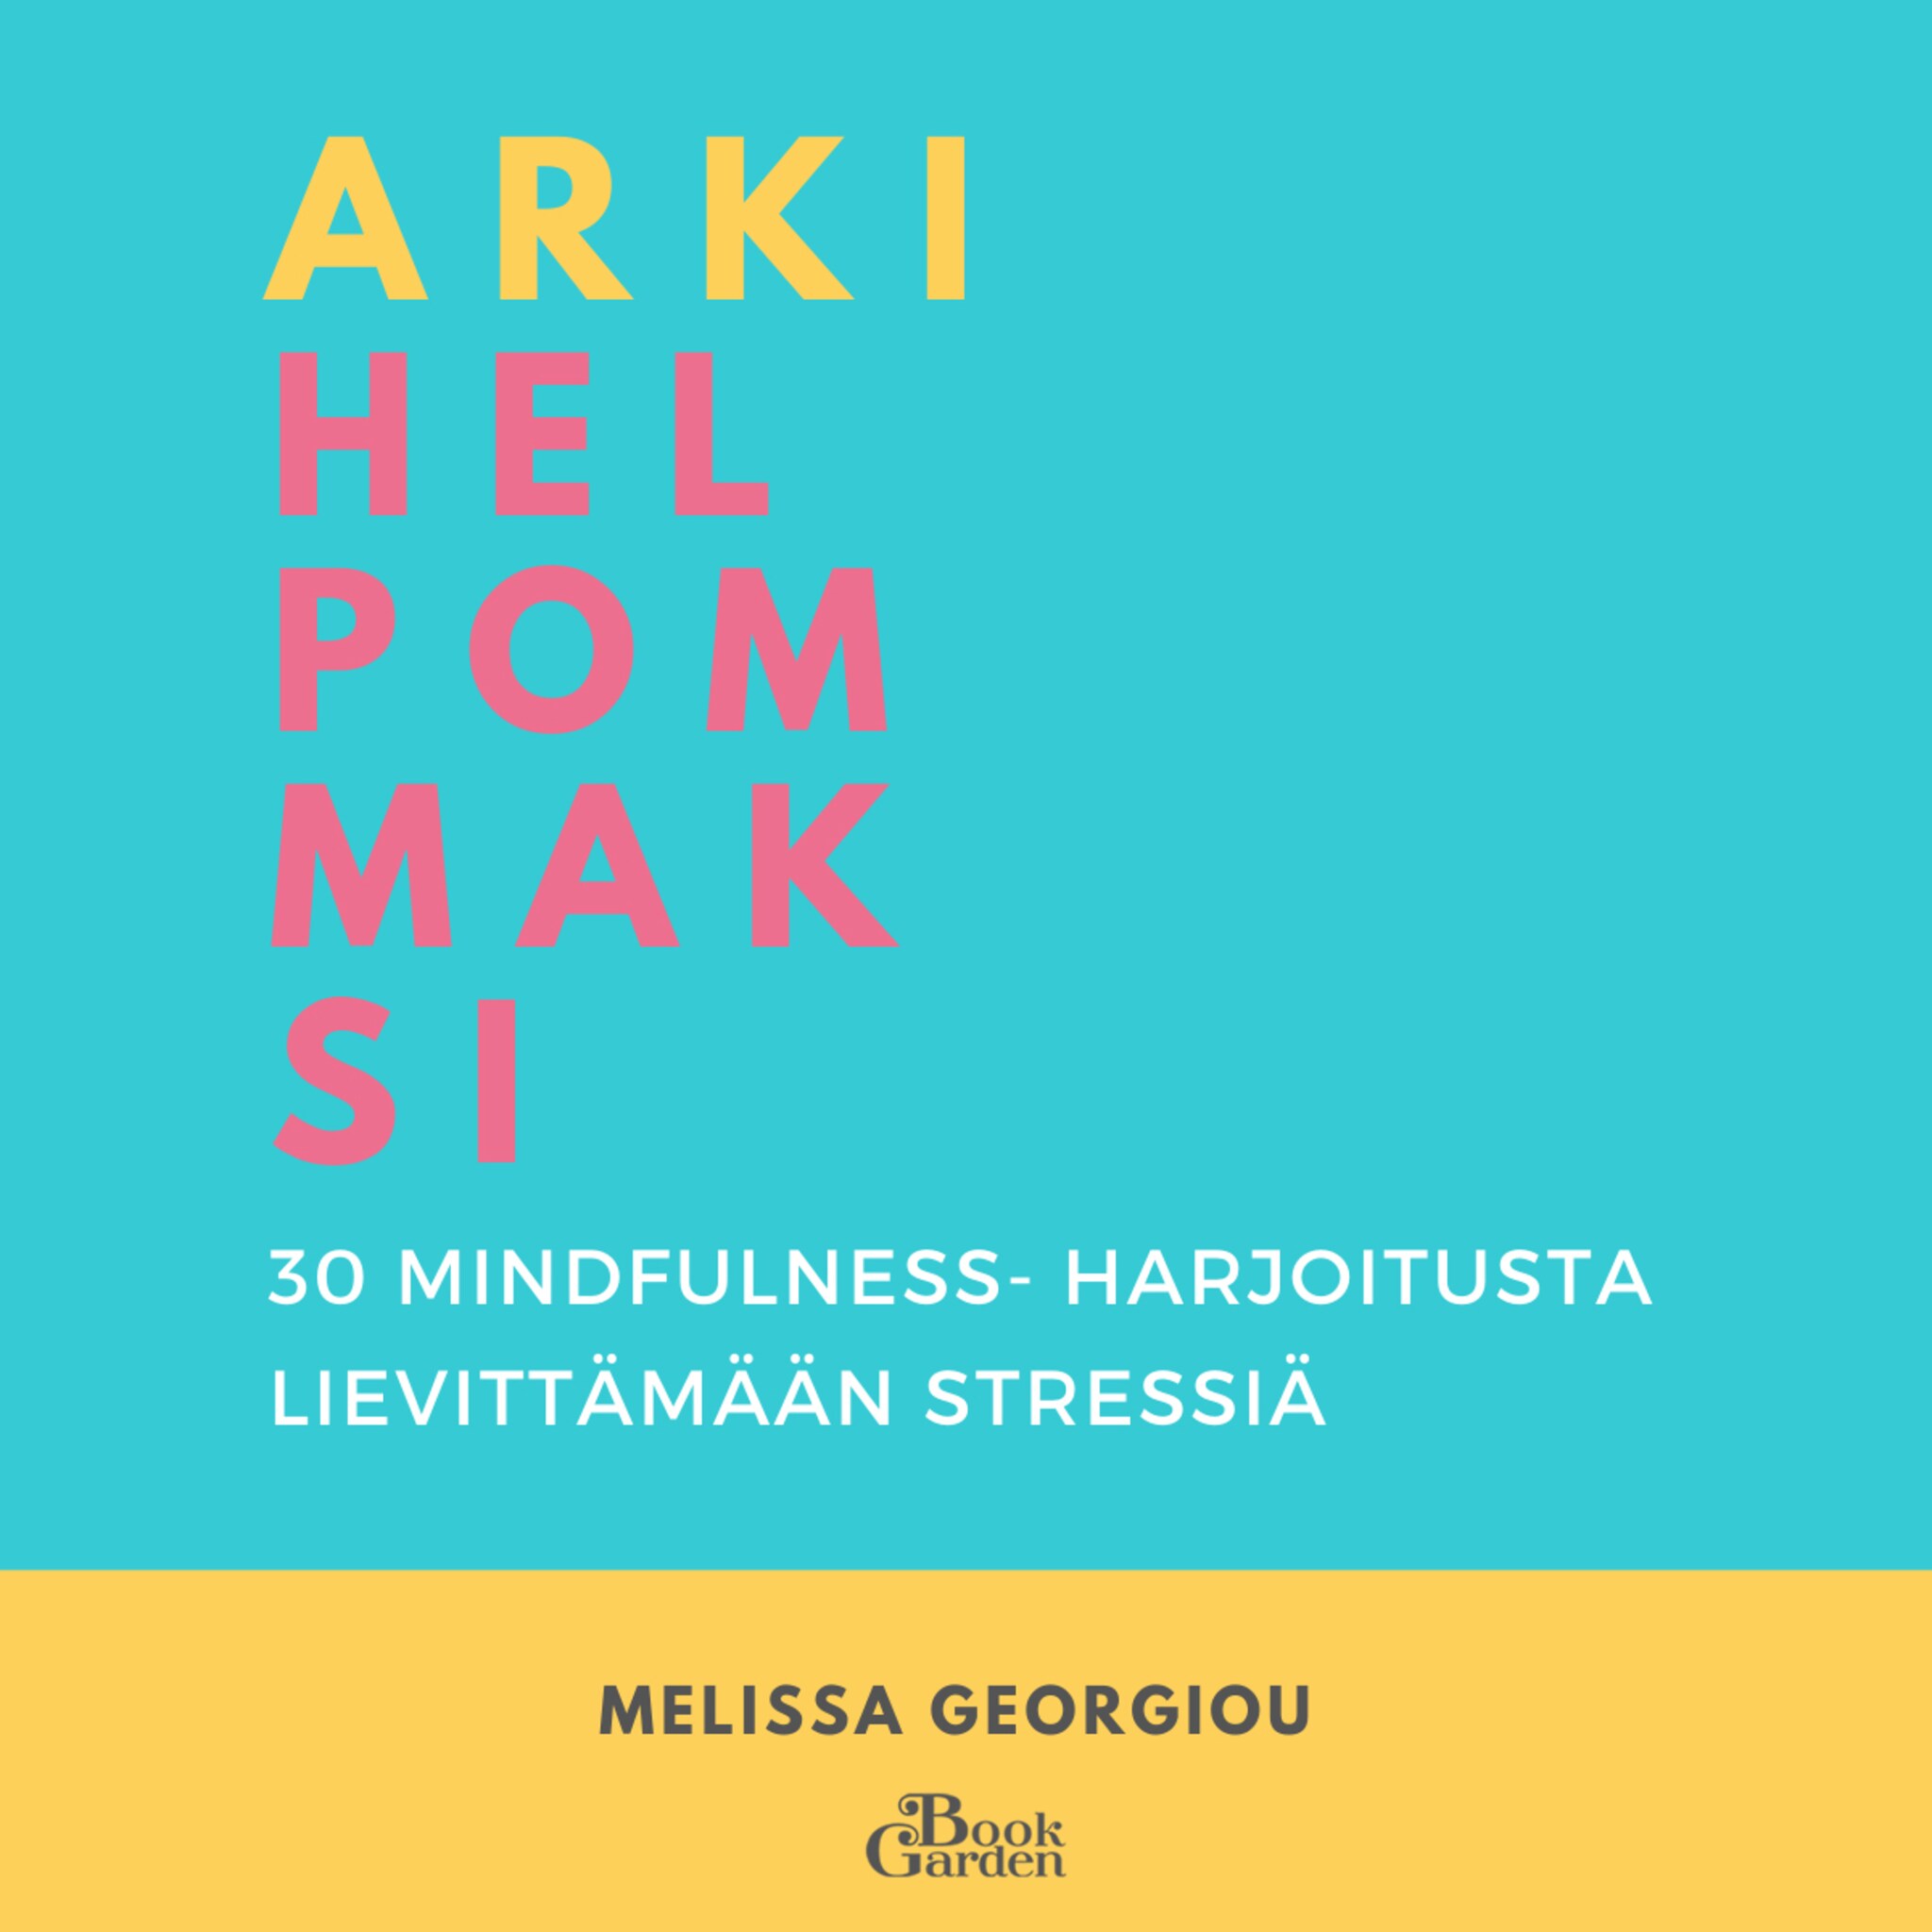 Arki helpommaksi – 30 mindfulness-harjoitusta lievittämään stressiä ilmaiseksi